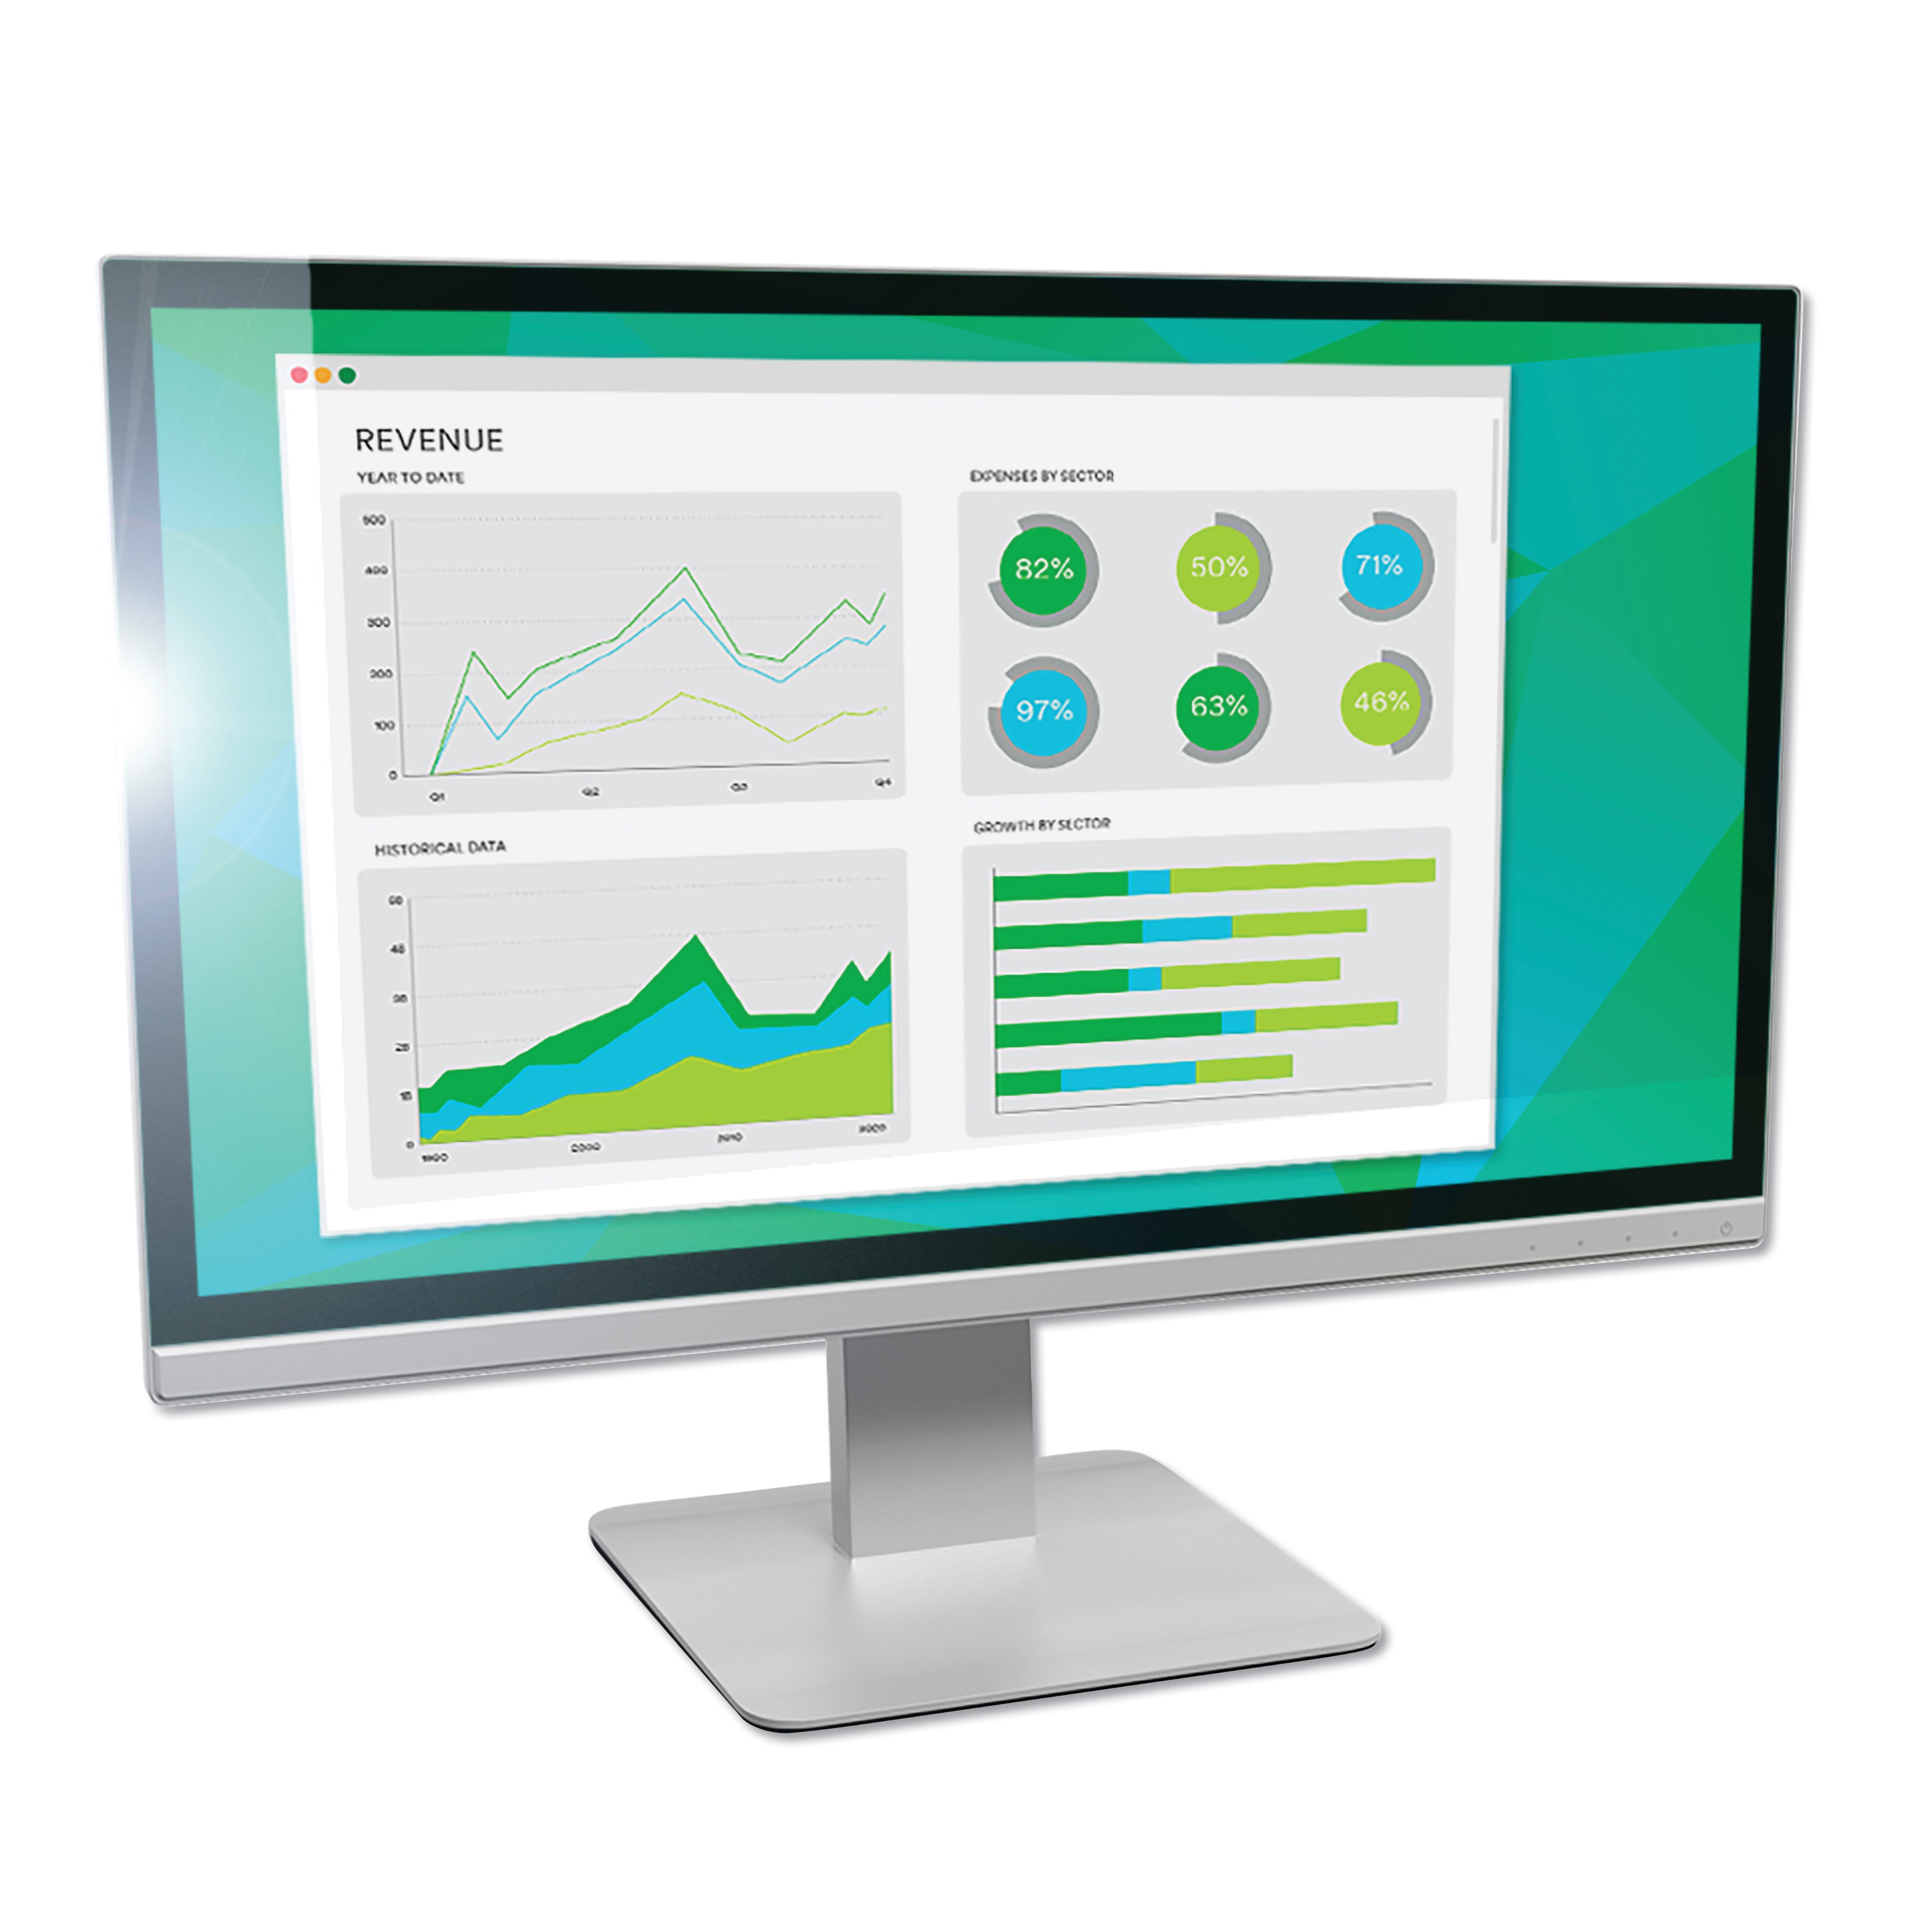 Antiglare Frameless Filter for 23" Widescreen Flat Panel Monitor, 16:9 Aspect Ratio - 